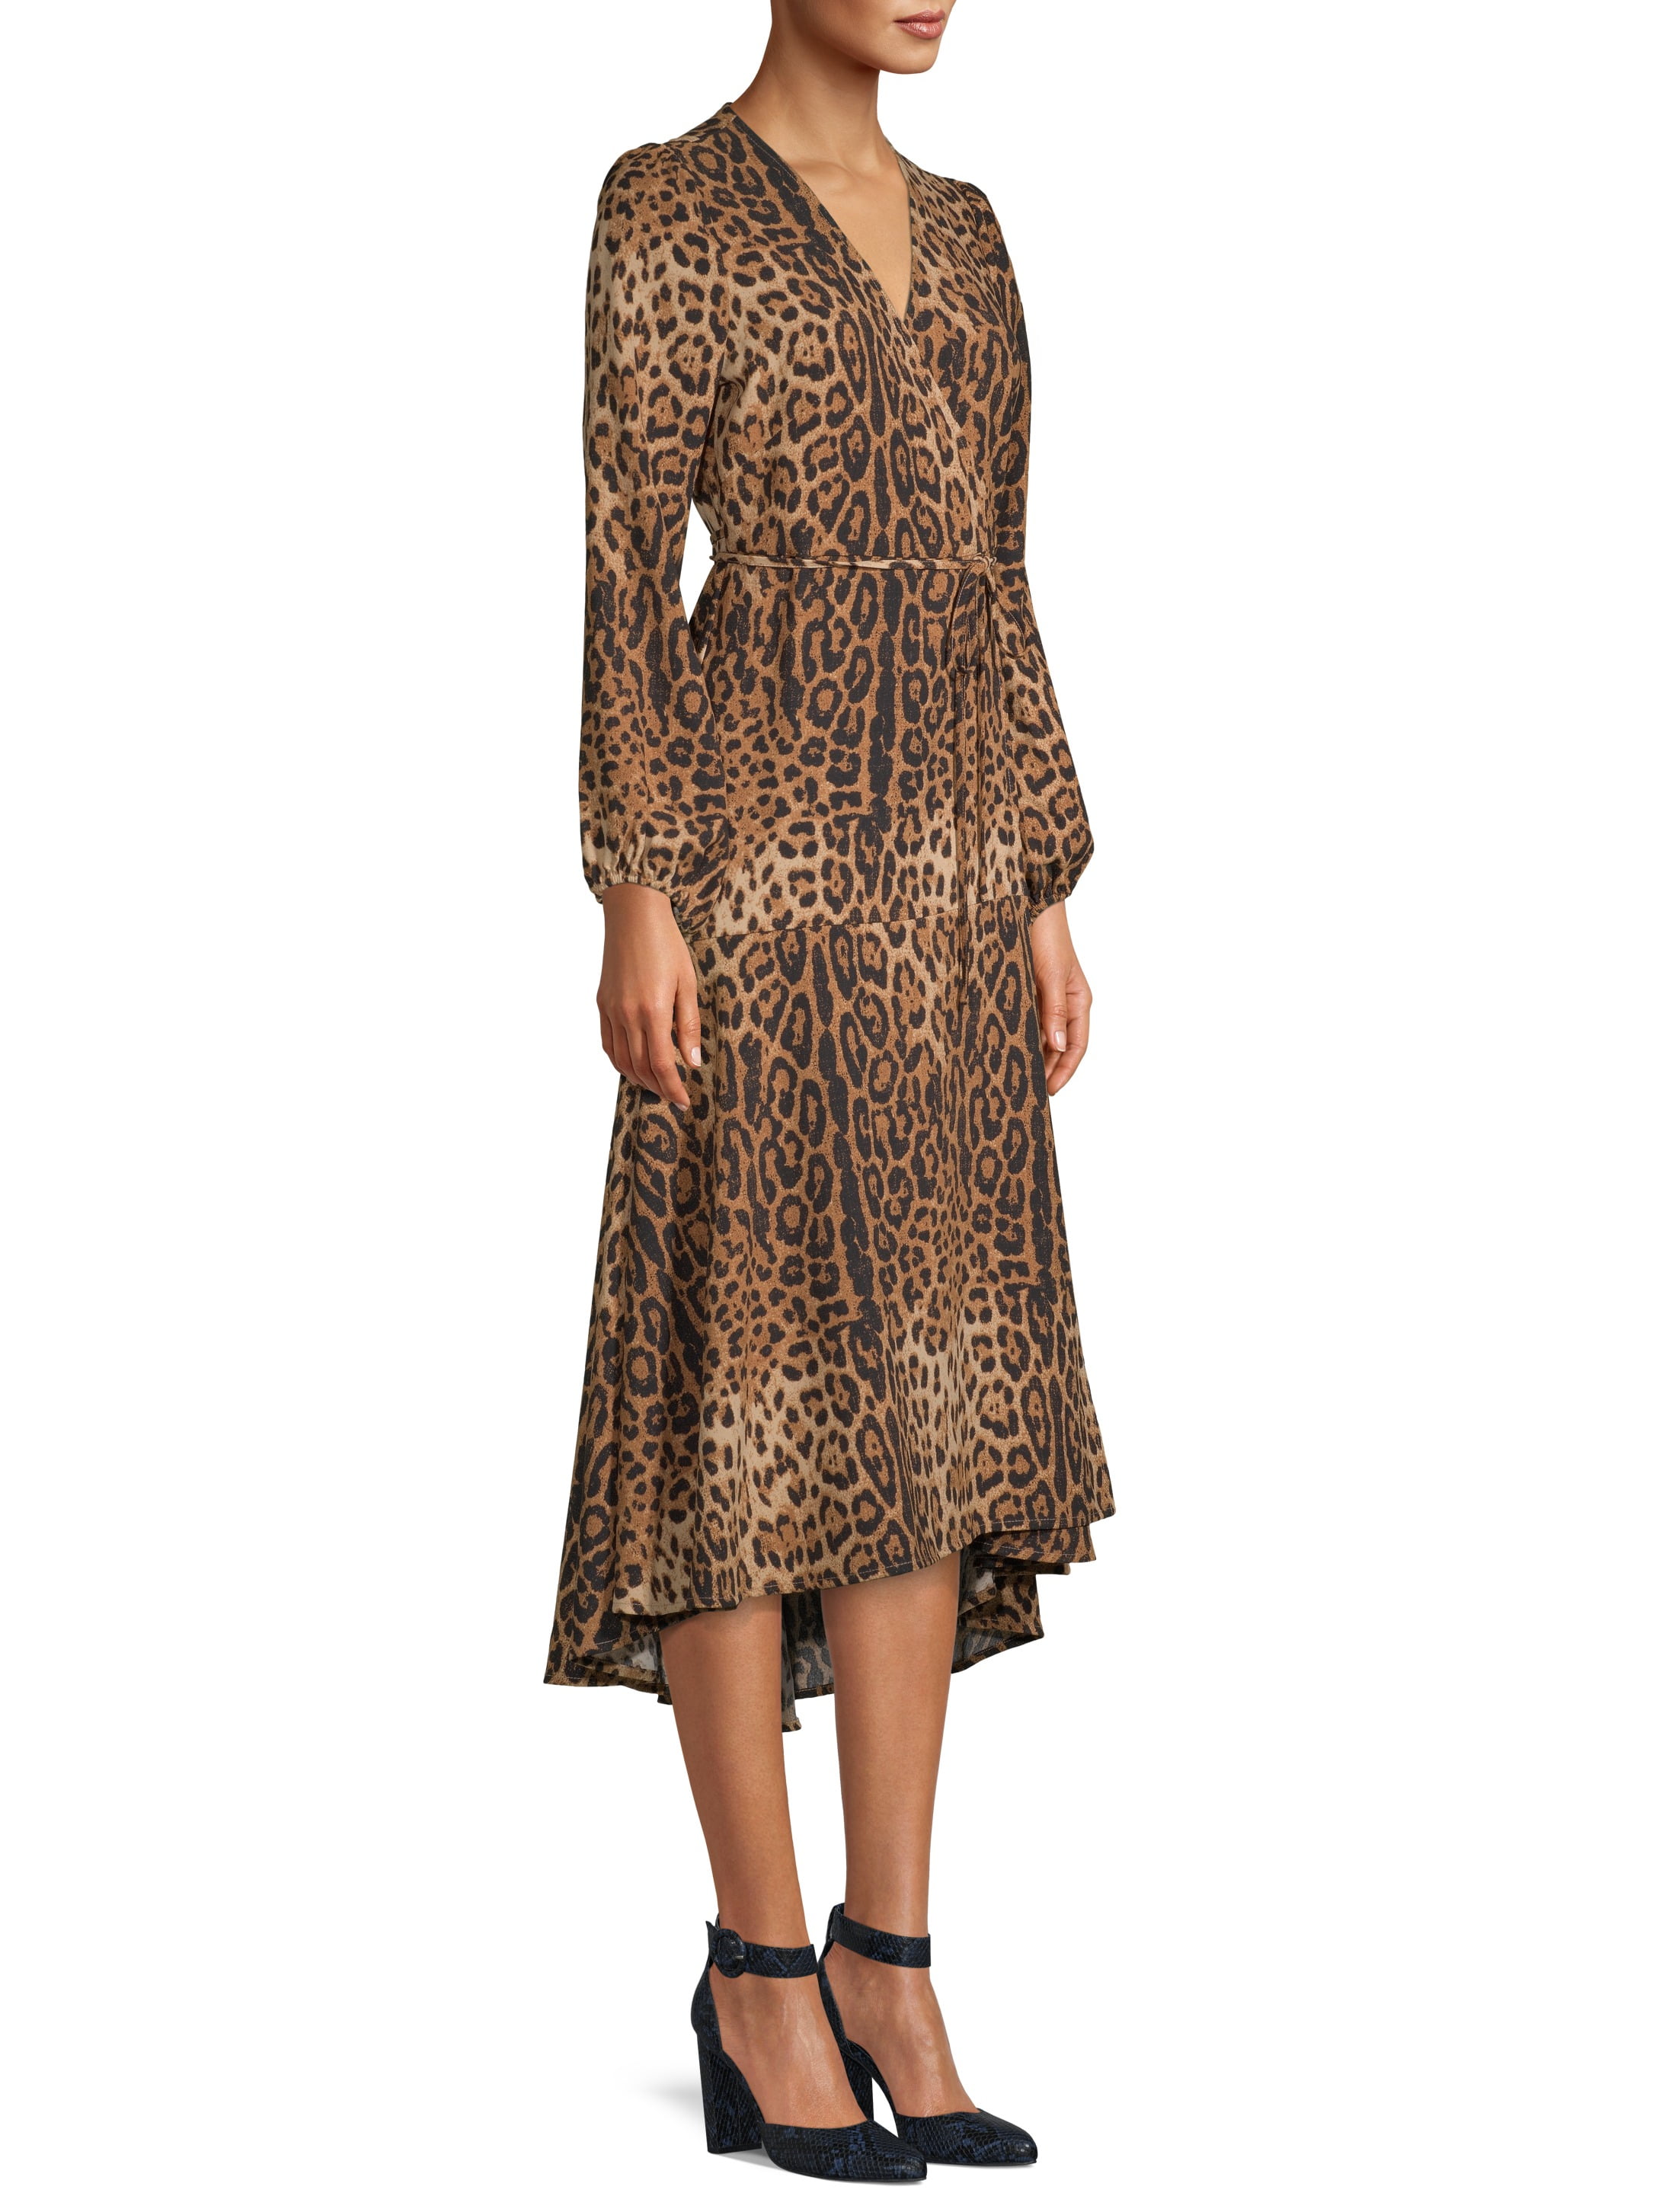 Maxi Dress Leopard Print ...